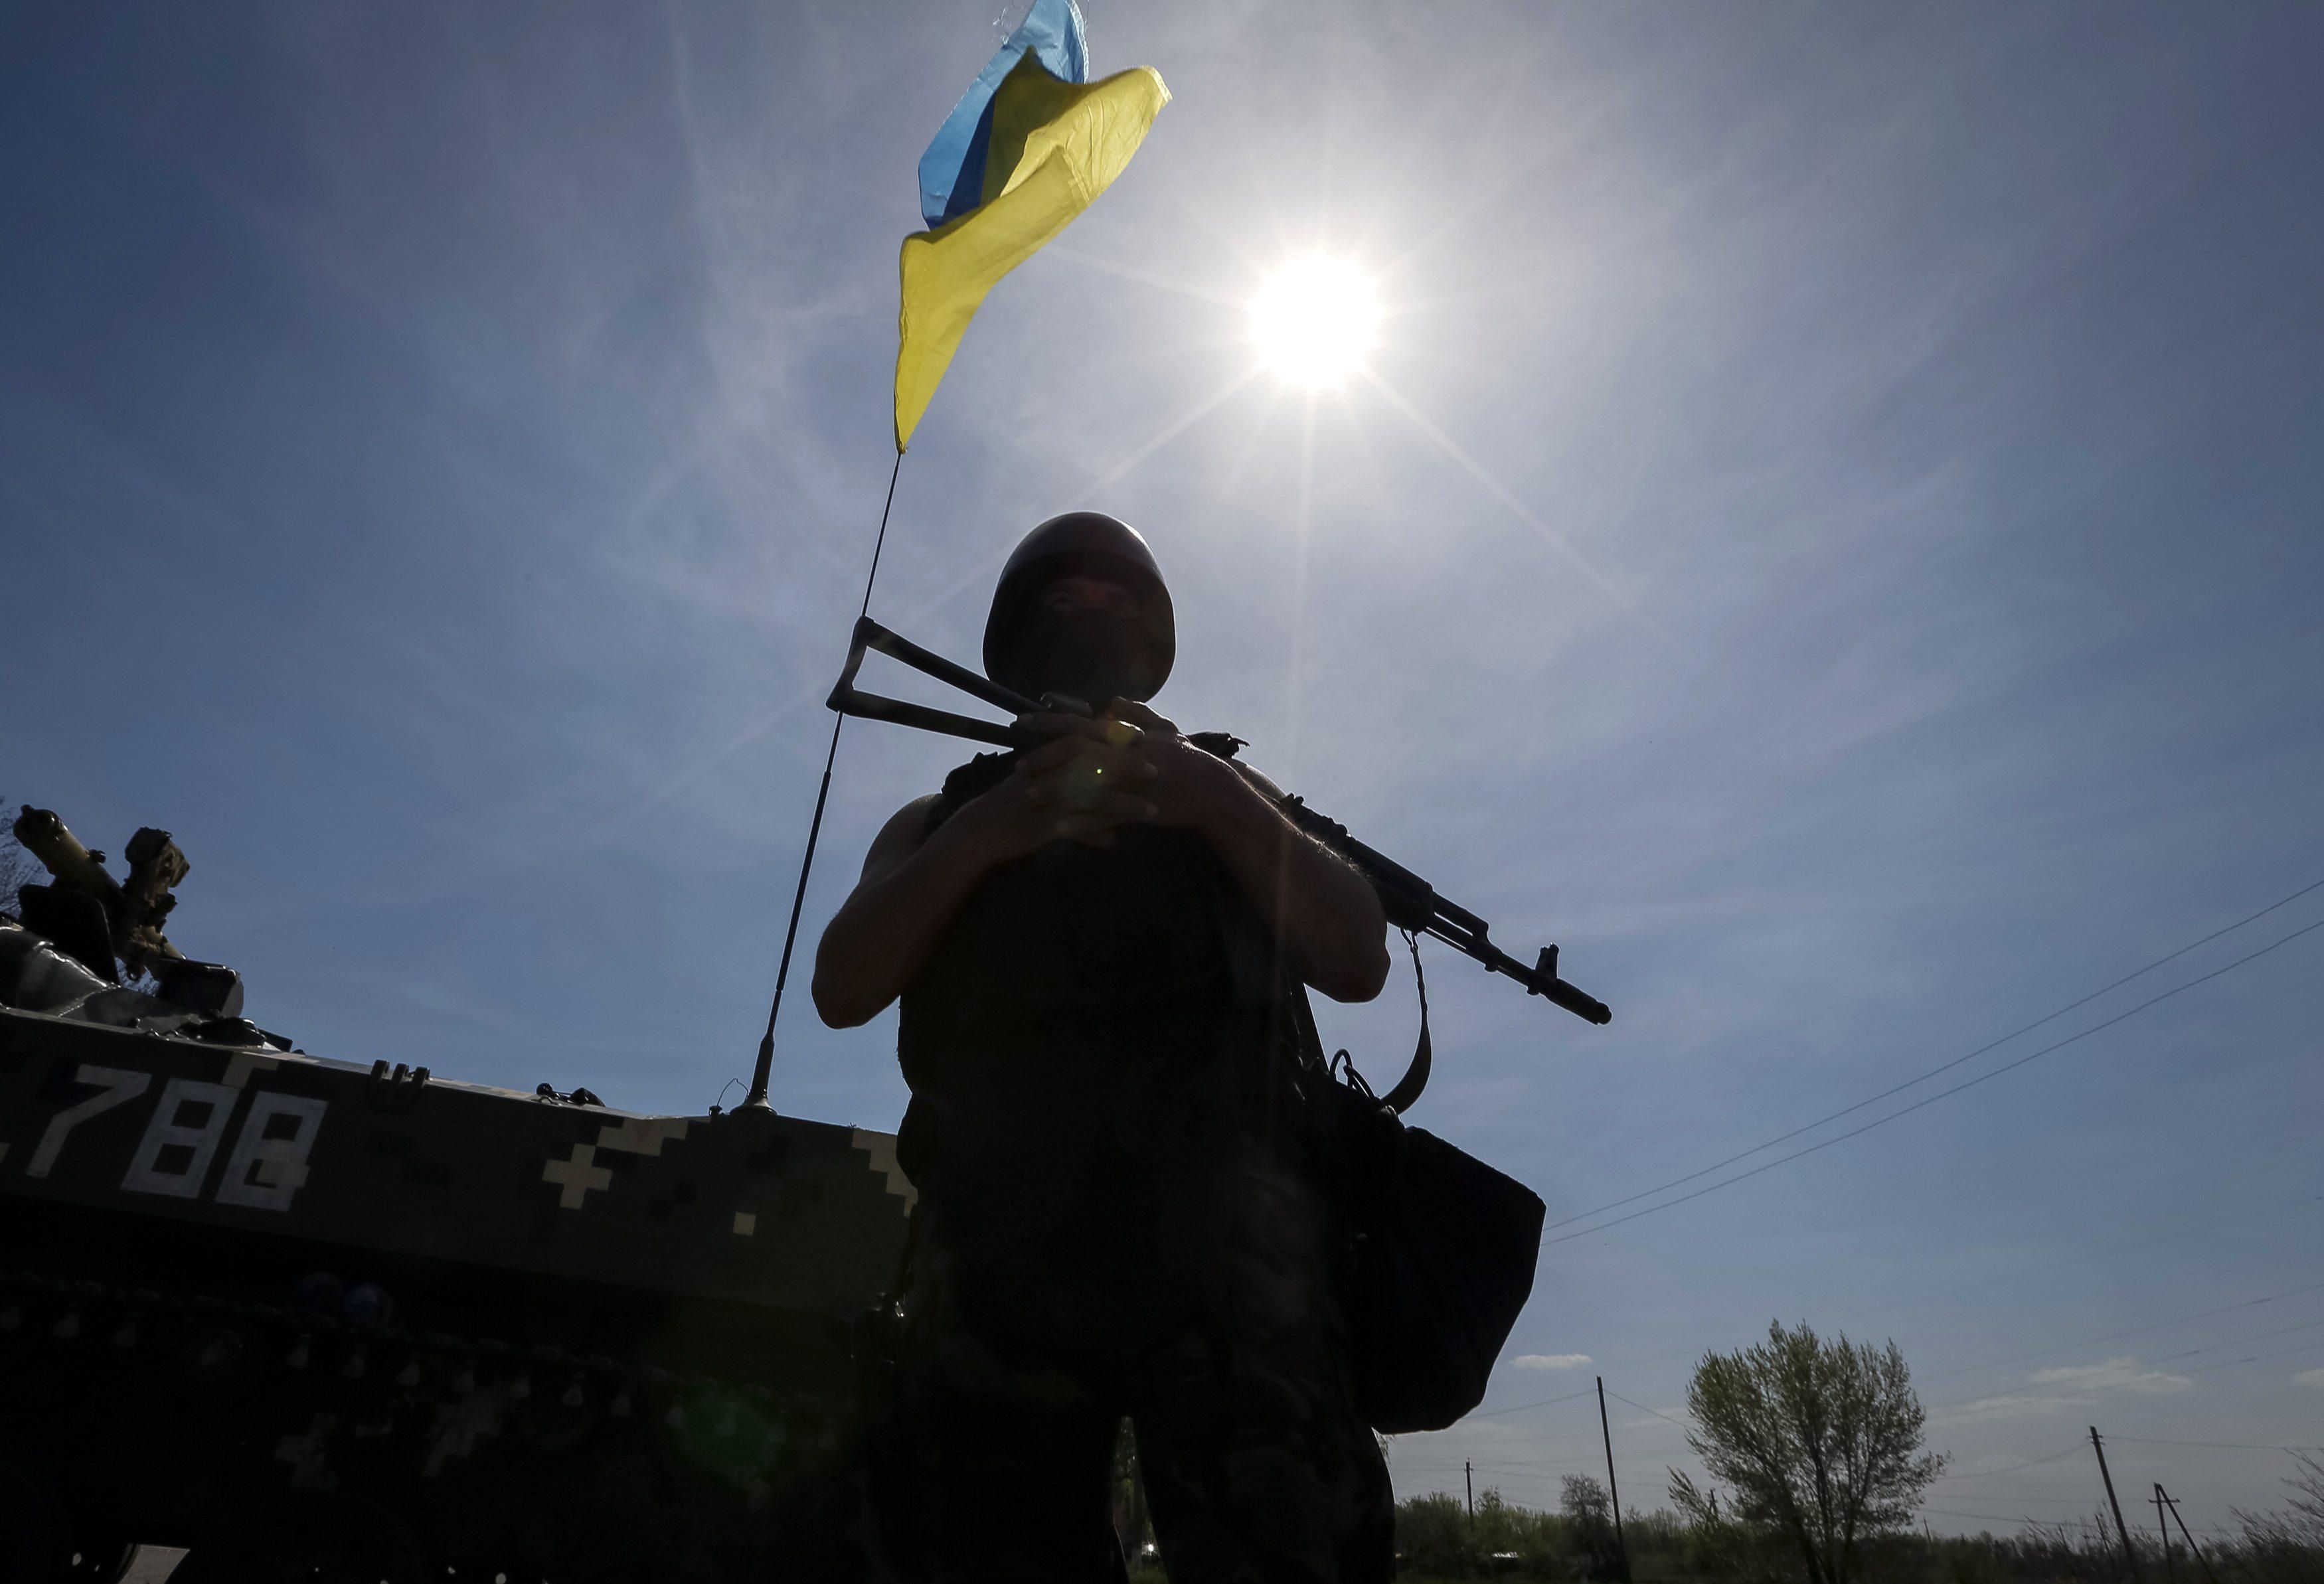 Ще два військових віддали життя за Україну: опубліковані фото